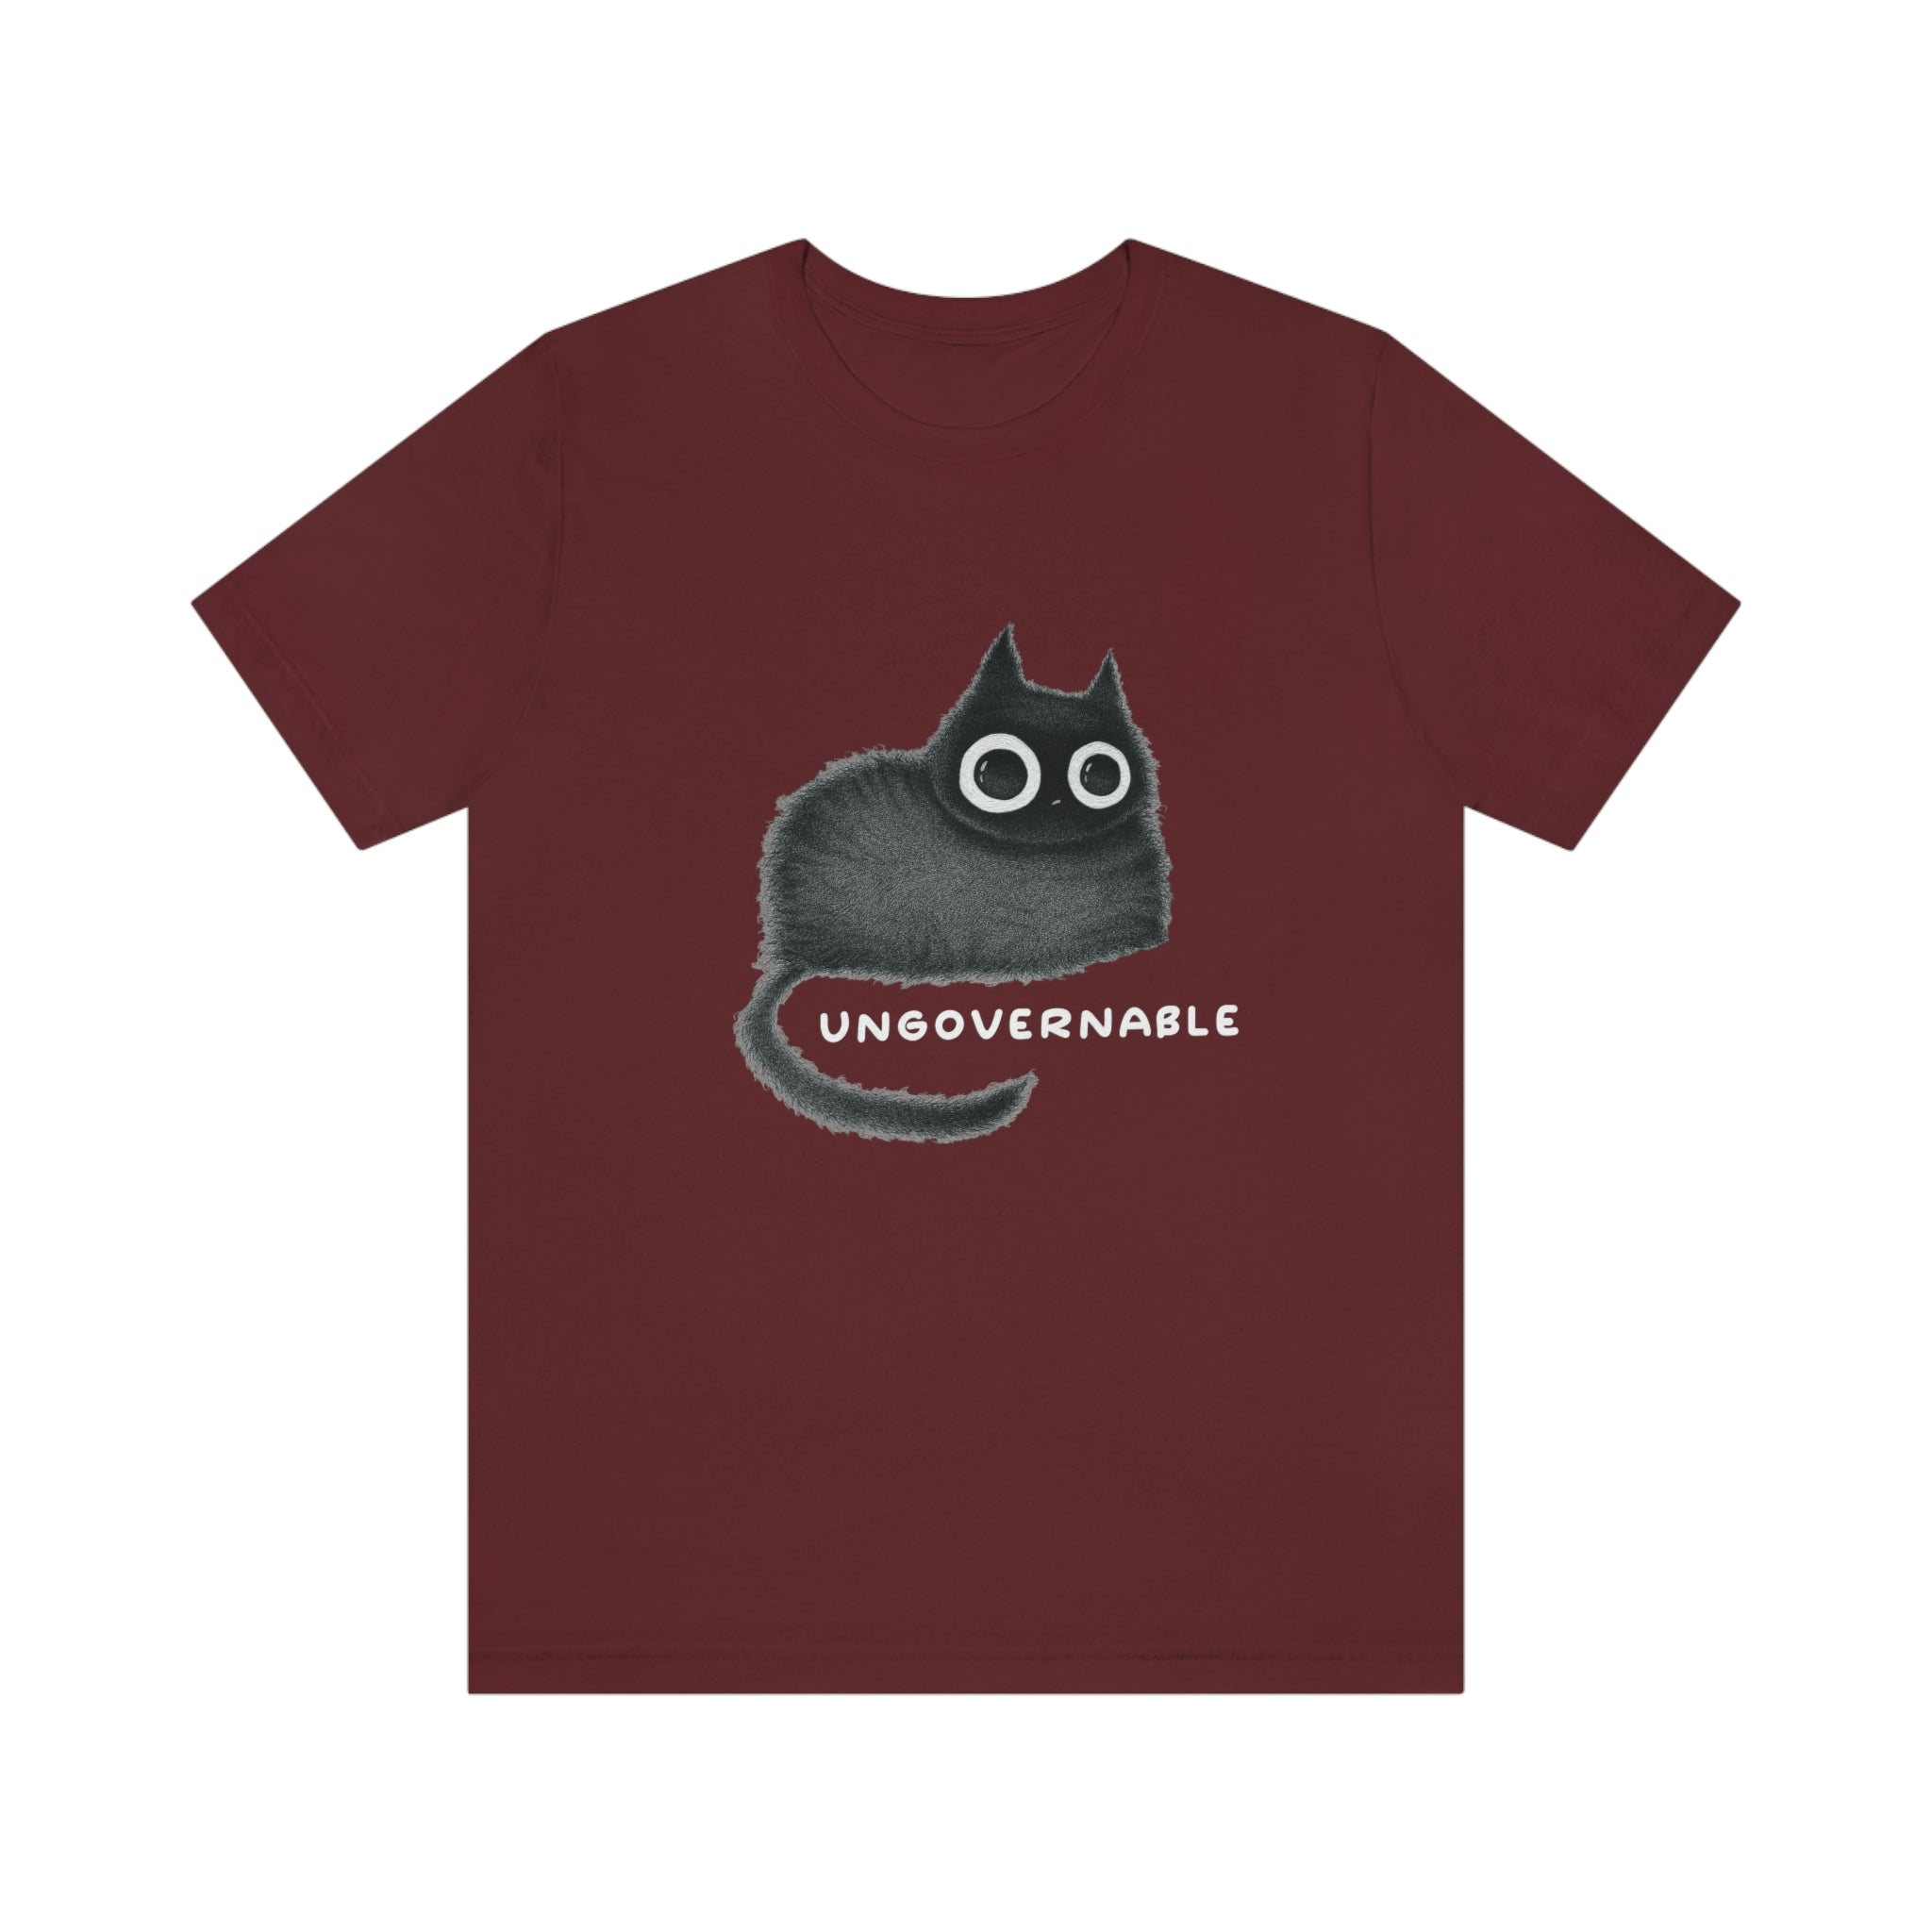 Ungovernable : Unisex 100% Comfy Cotton T-Shirt